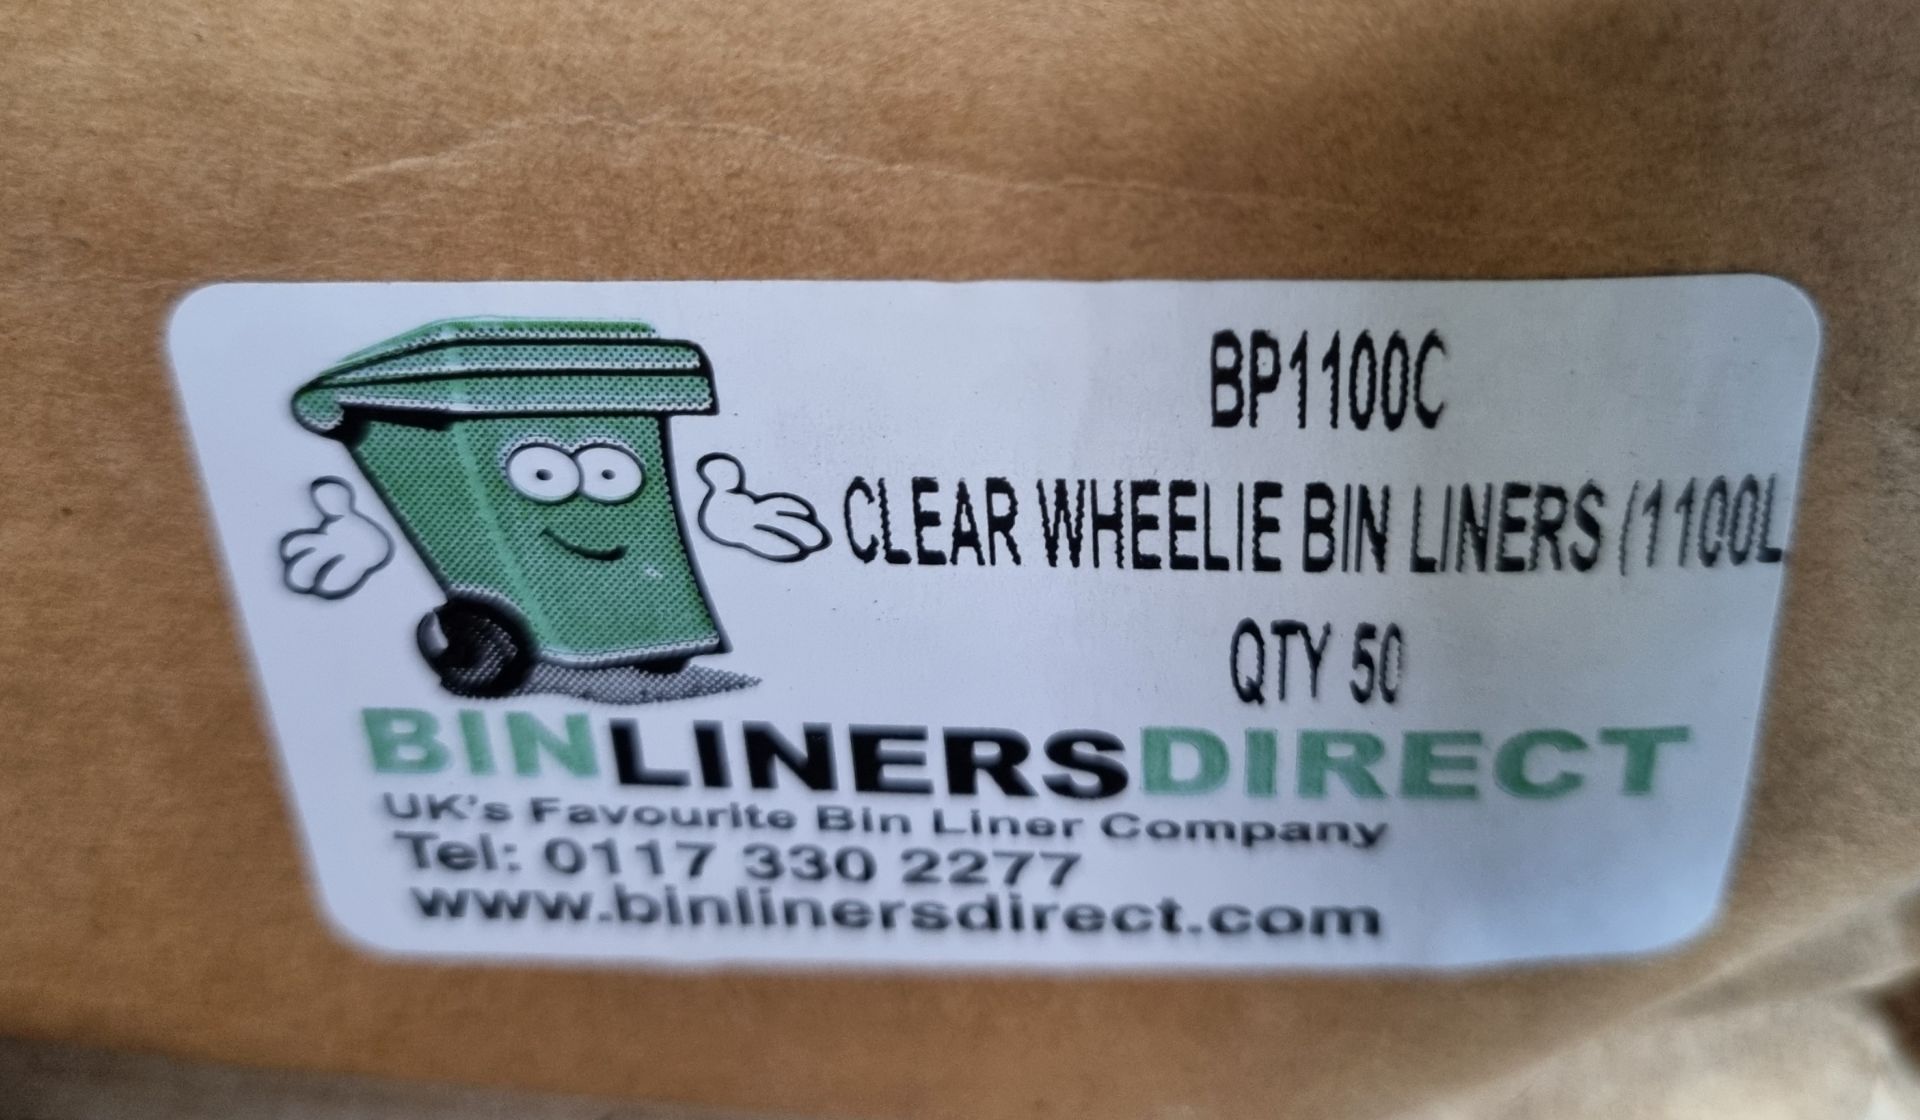 Heavy duty wheelie bin liners - 9 boxes - Image 2 of 2